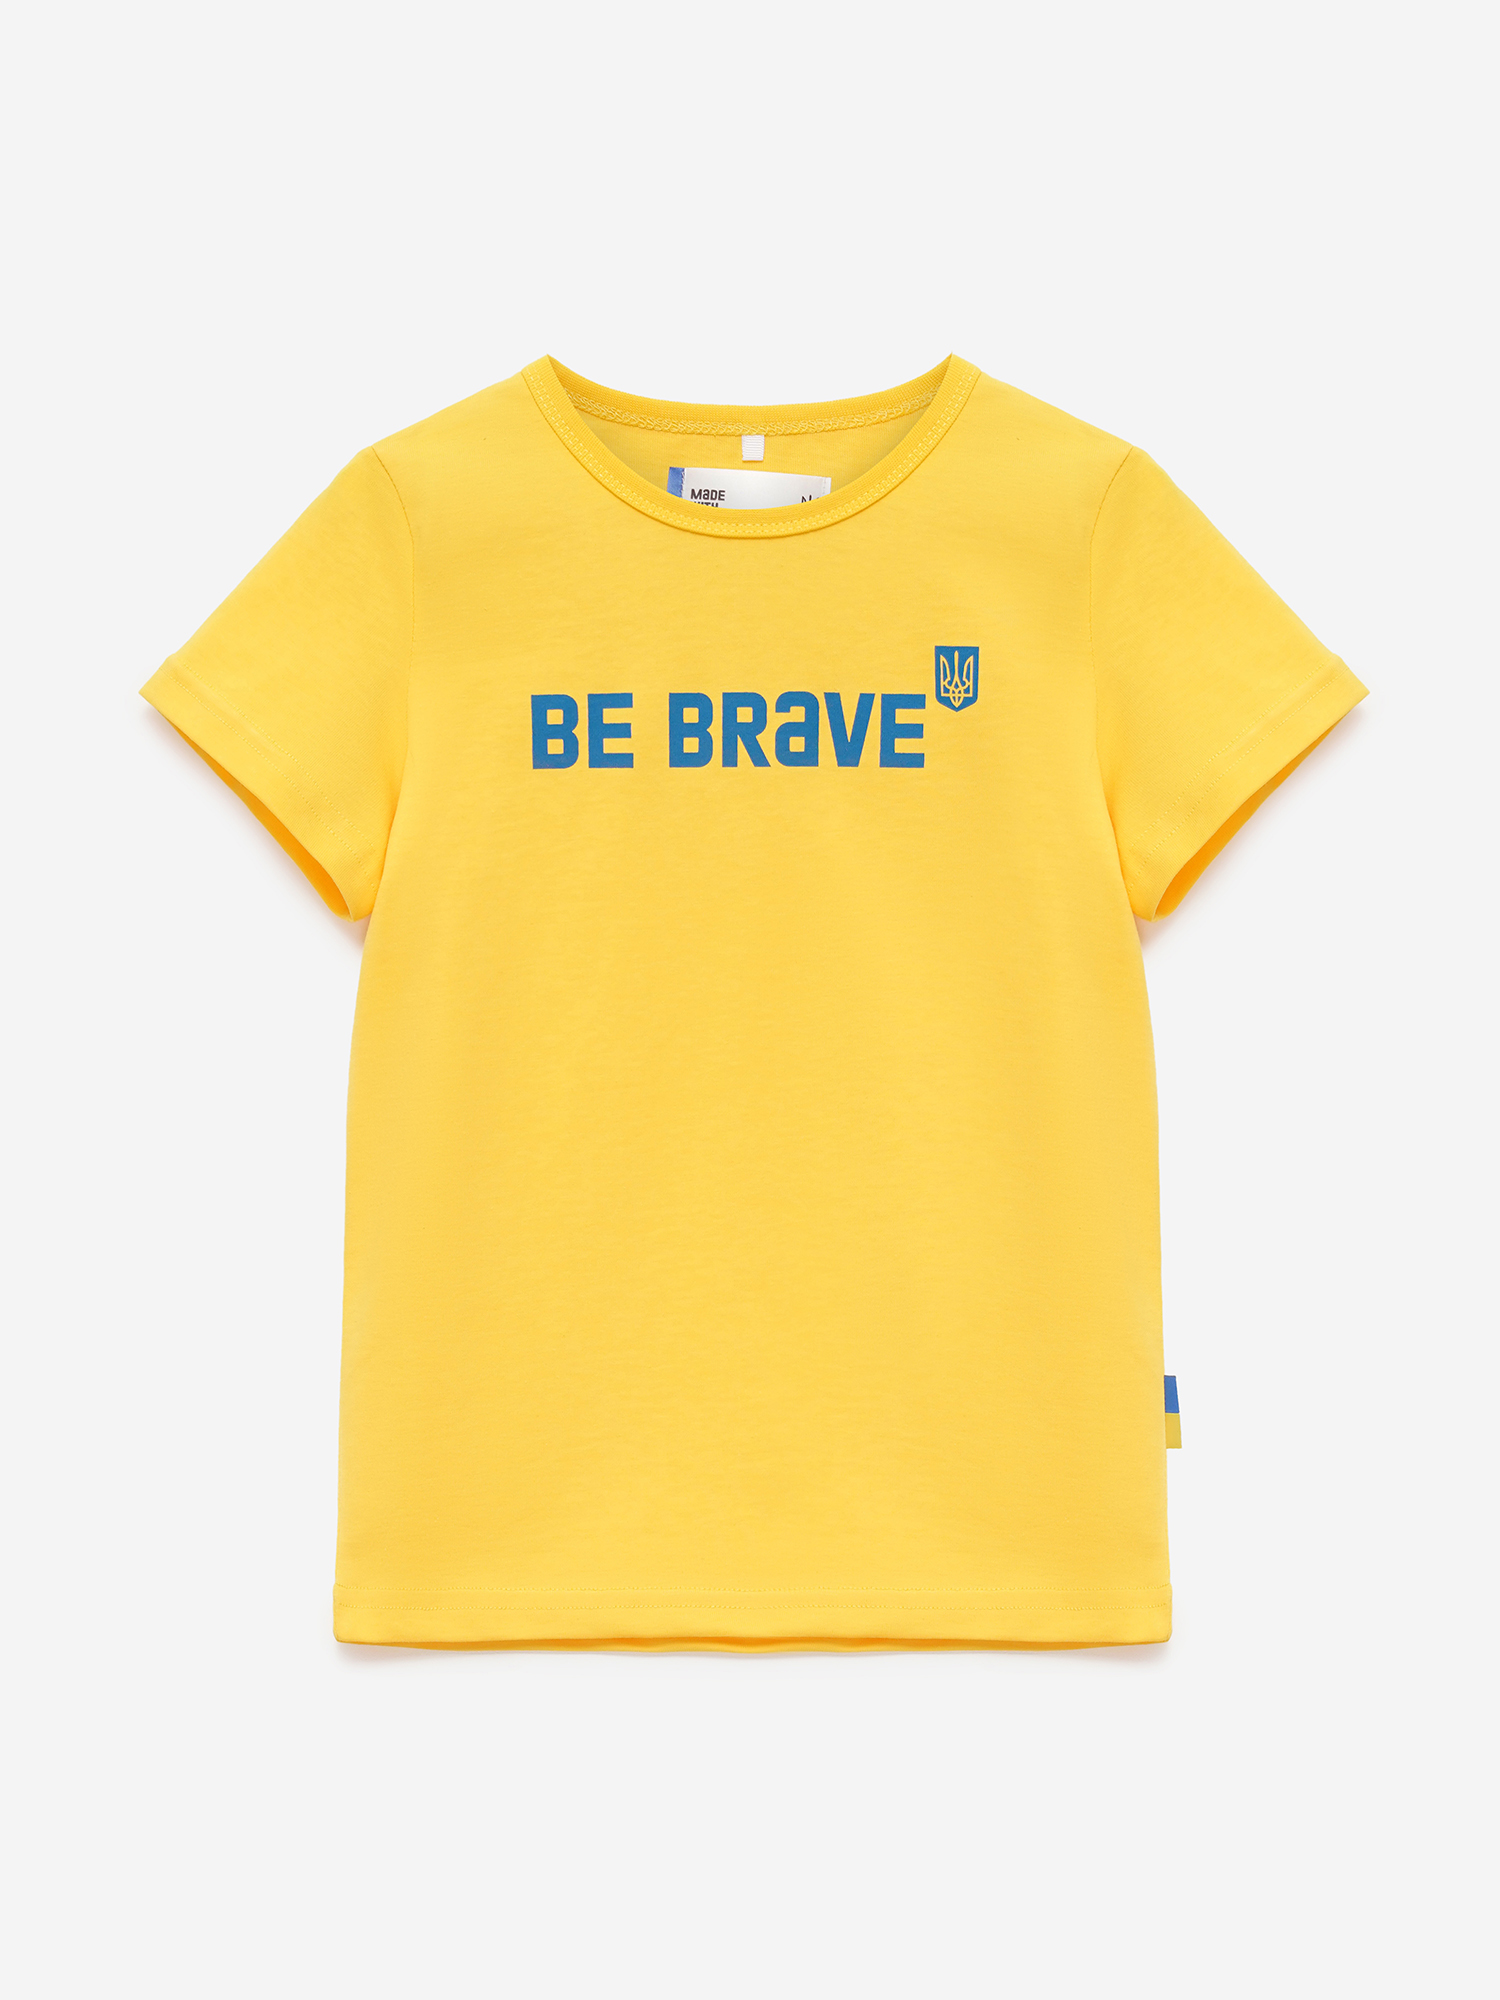 Картинка Футболка "Bravery" жовта для хлопчиків